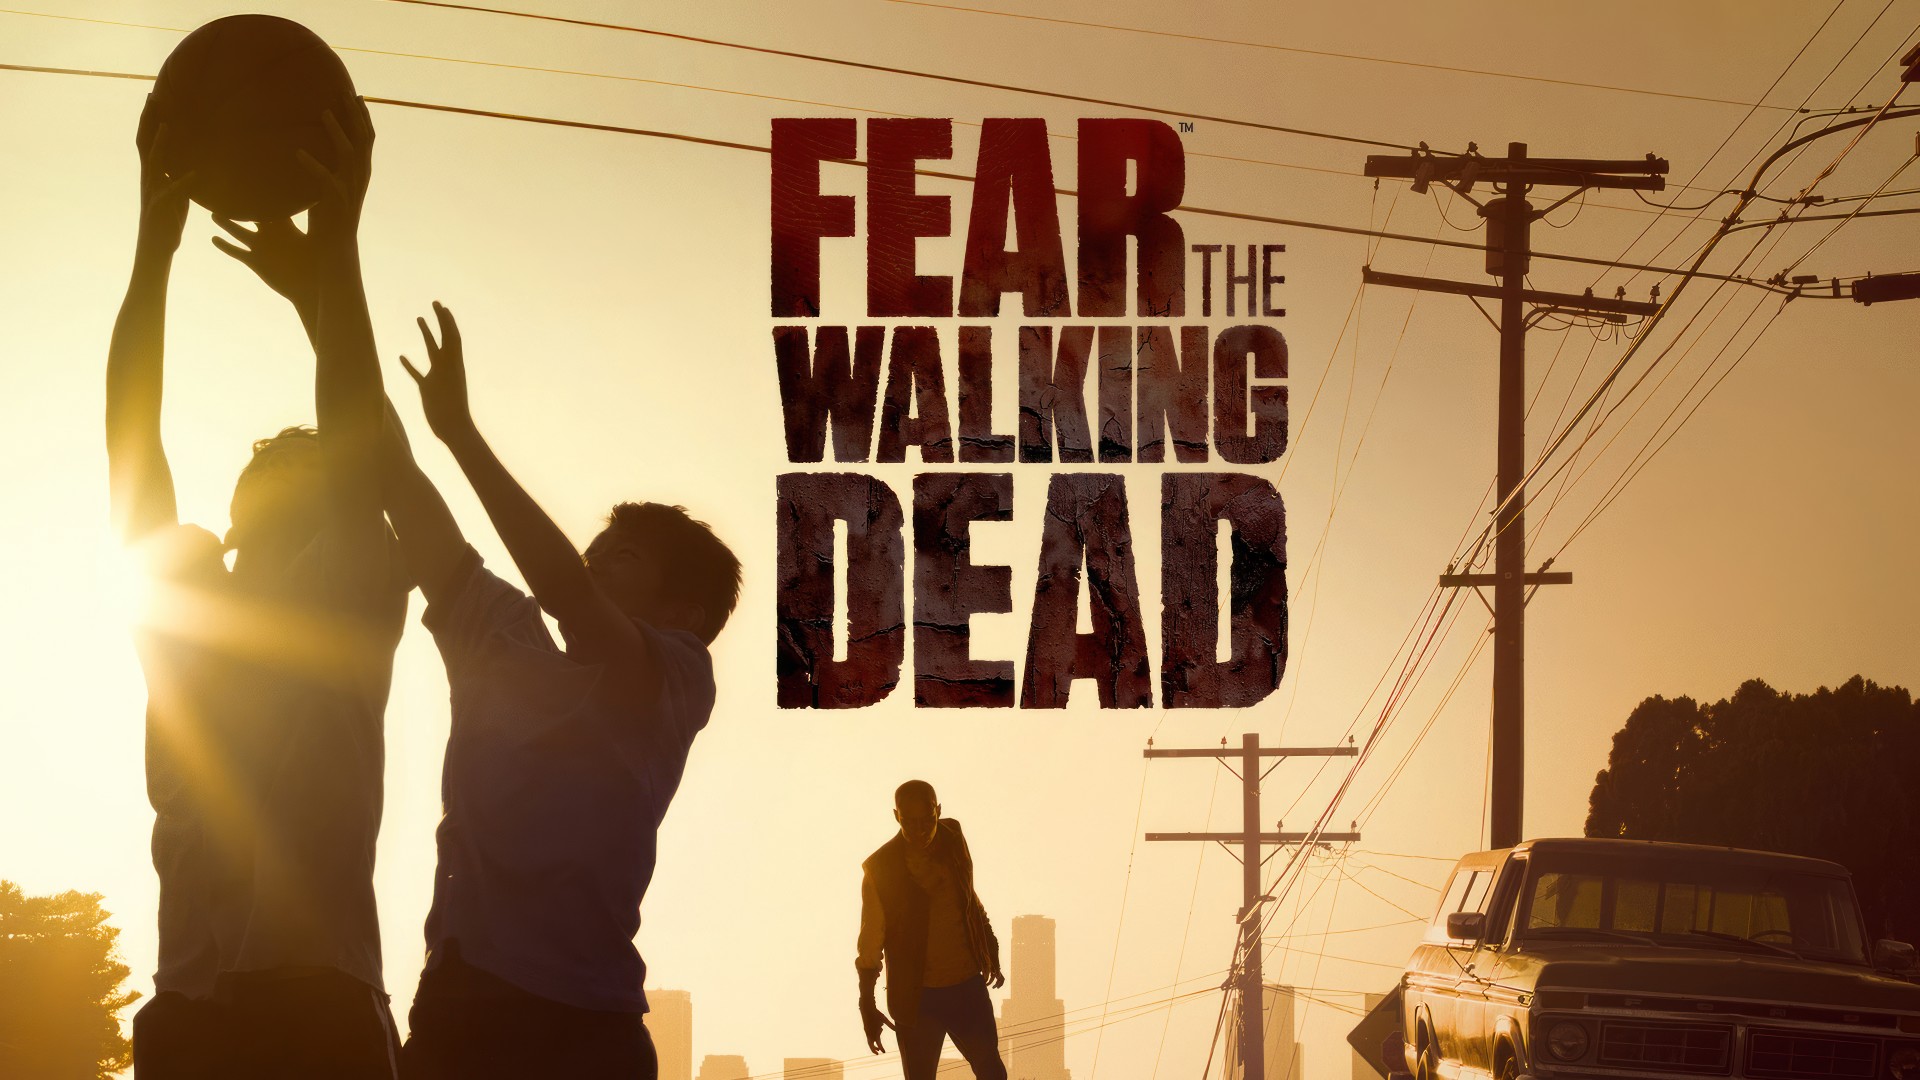 Fear The Walking Dead Season 1 Google Drive Download